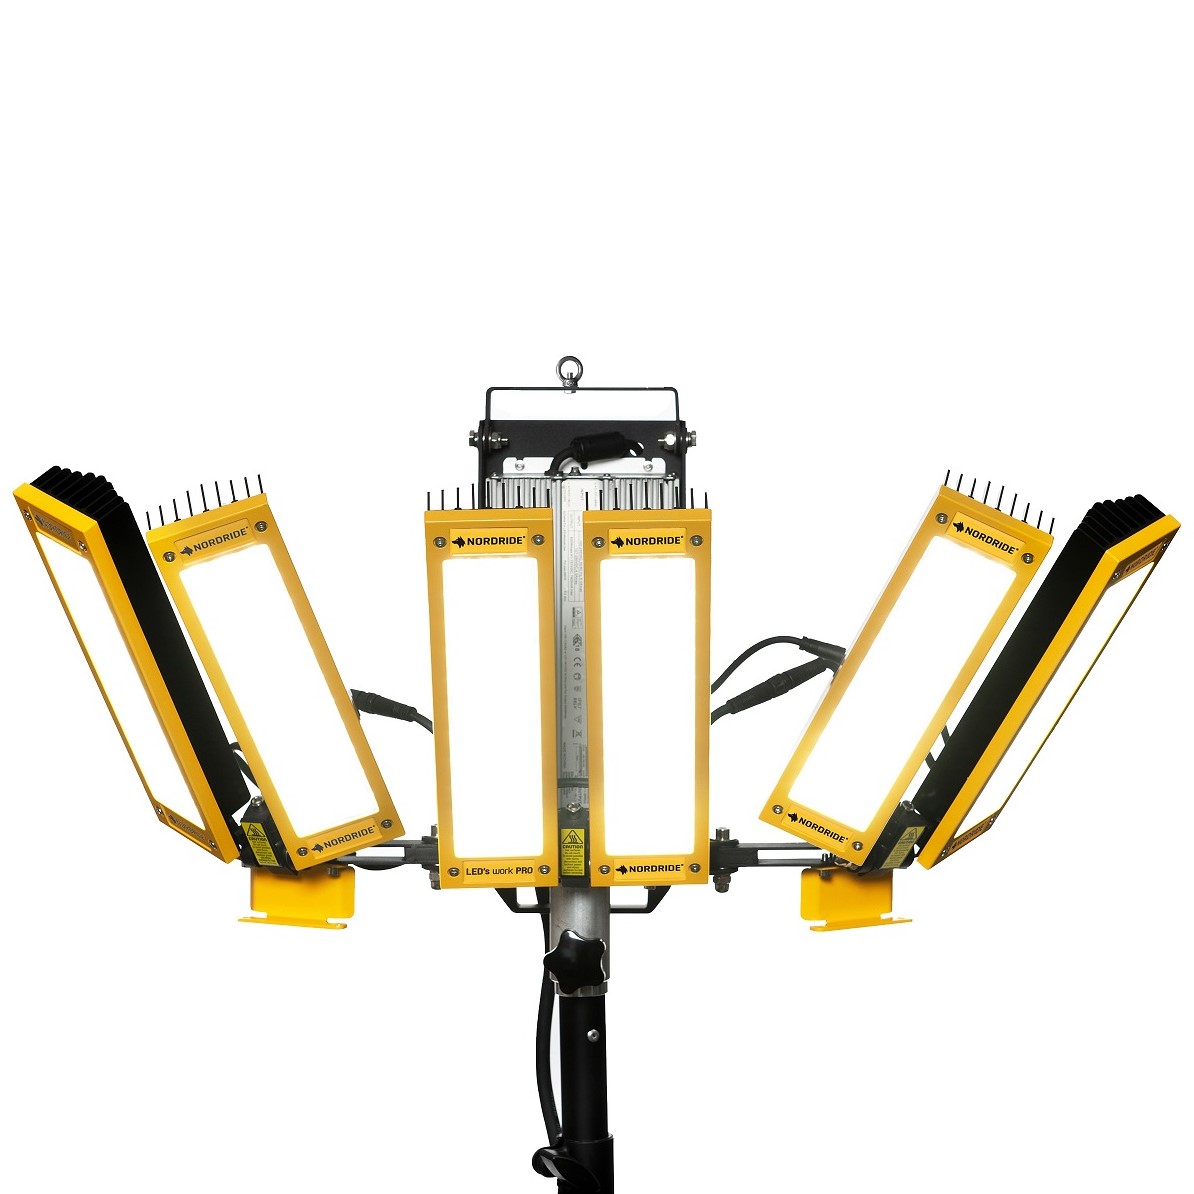 Flexible 360° Beleuchtung für Baustellen & Eventbeleuchtung mit individuell einstellbare Lichtwirkung dank einzeln verstellbaren Hochleistungs-Strahler - vertikal und horizontal